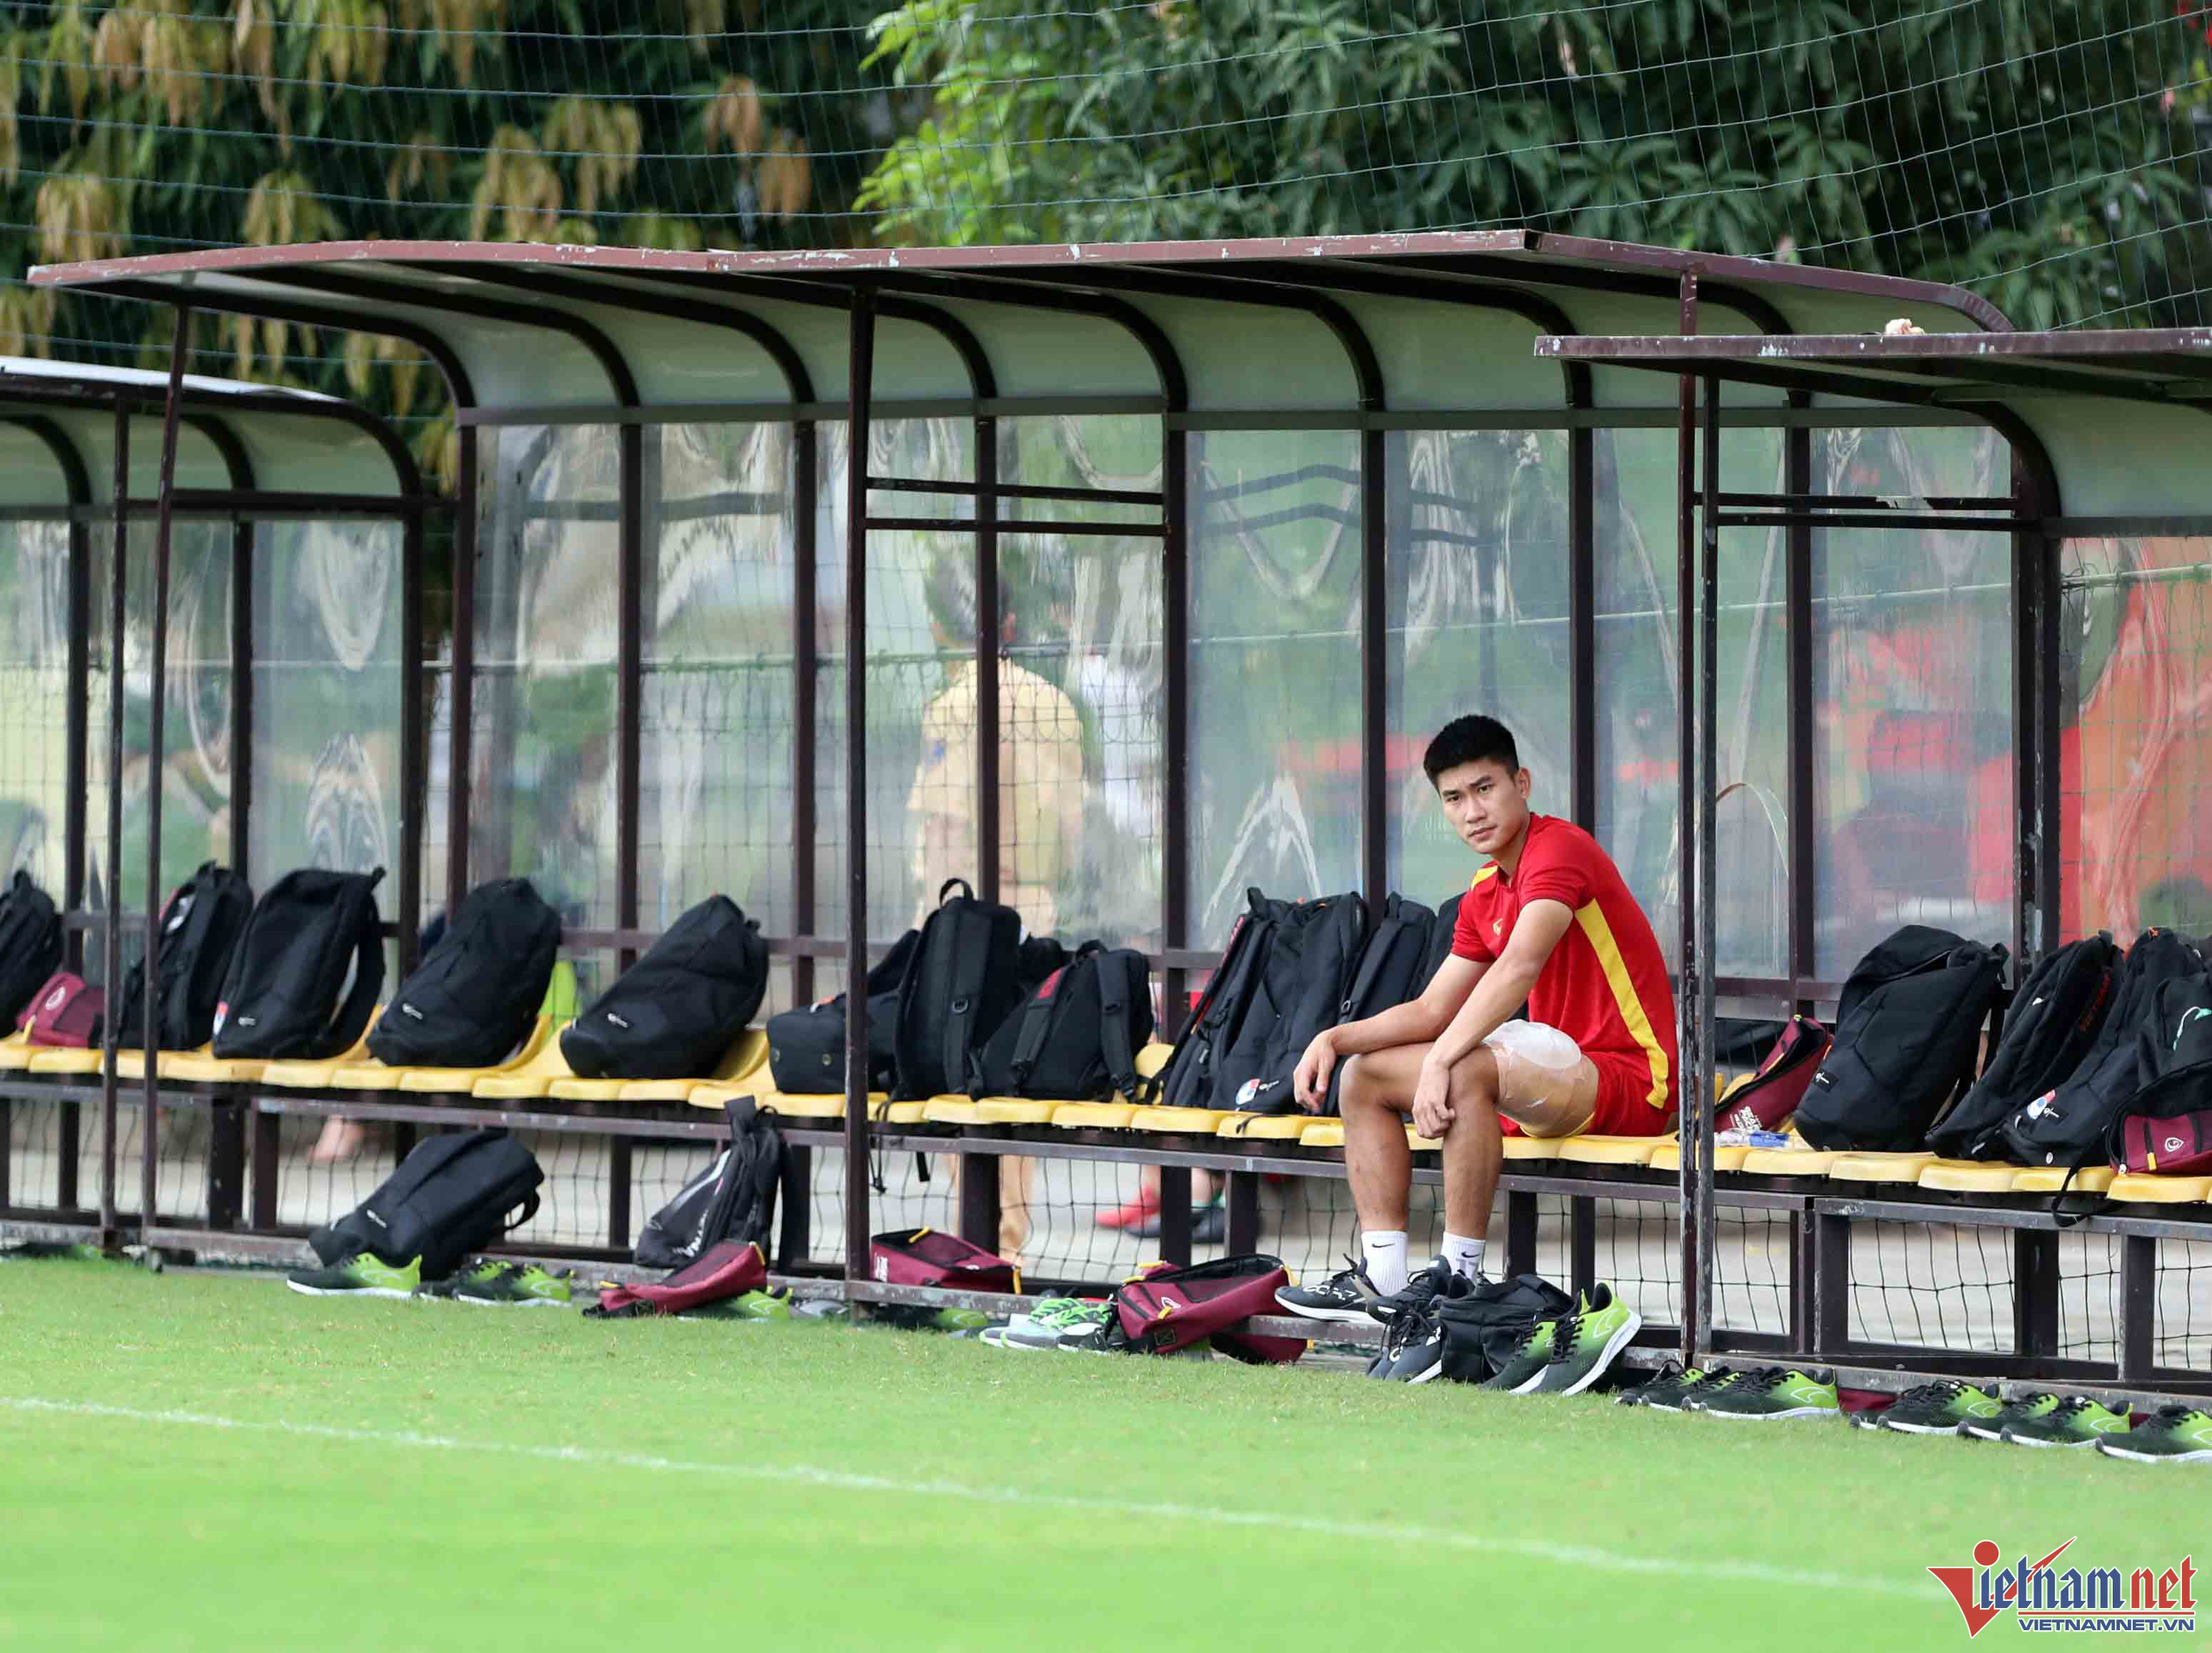 Người duy nhất không tham gia vào buổi tập là Nhâm Mạnh Dũng khi bị đau nhẹ sau chiến thắng trước U23 Myanmar